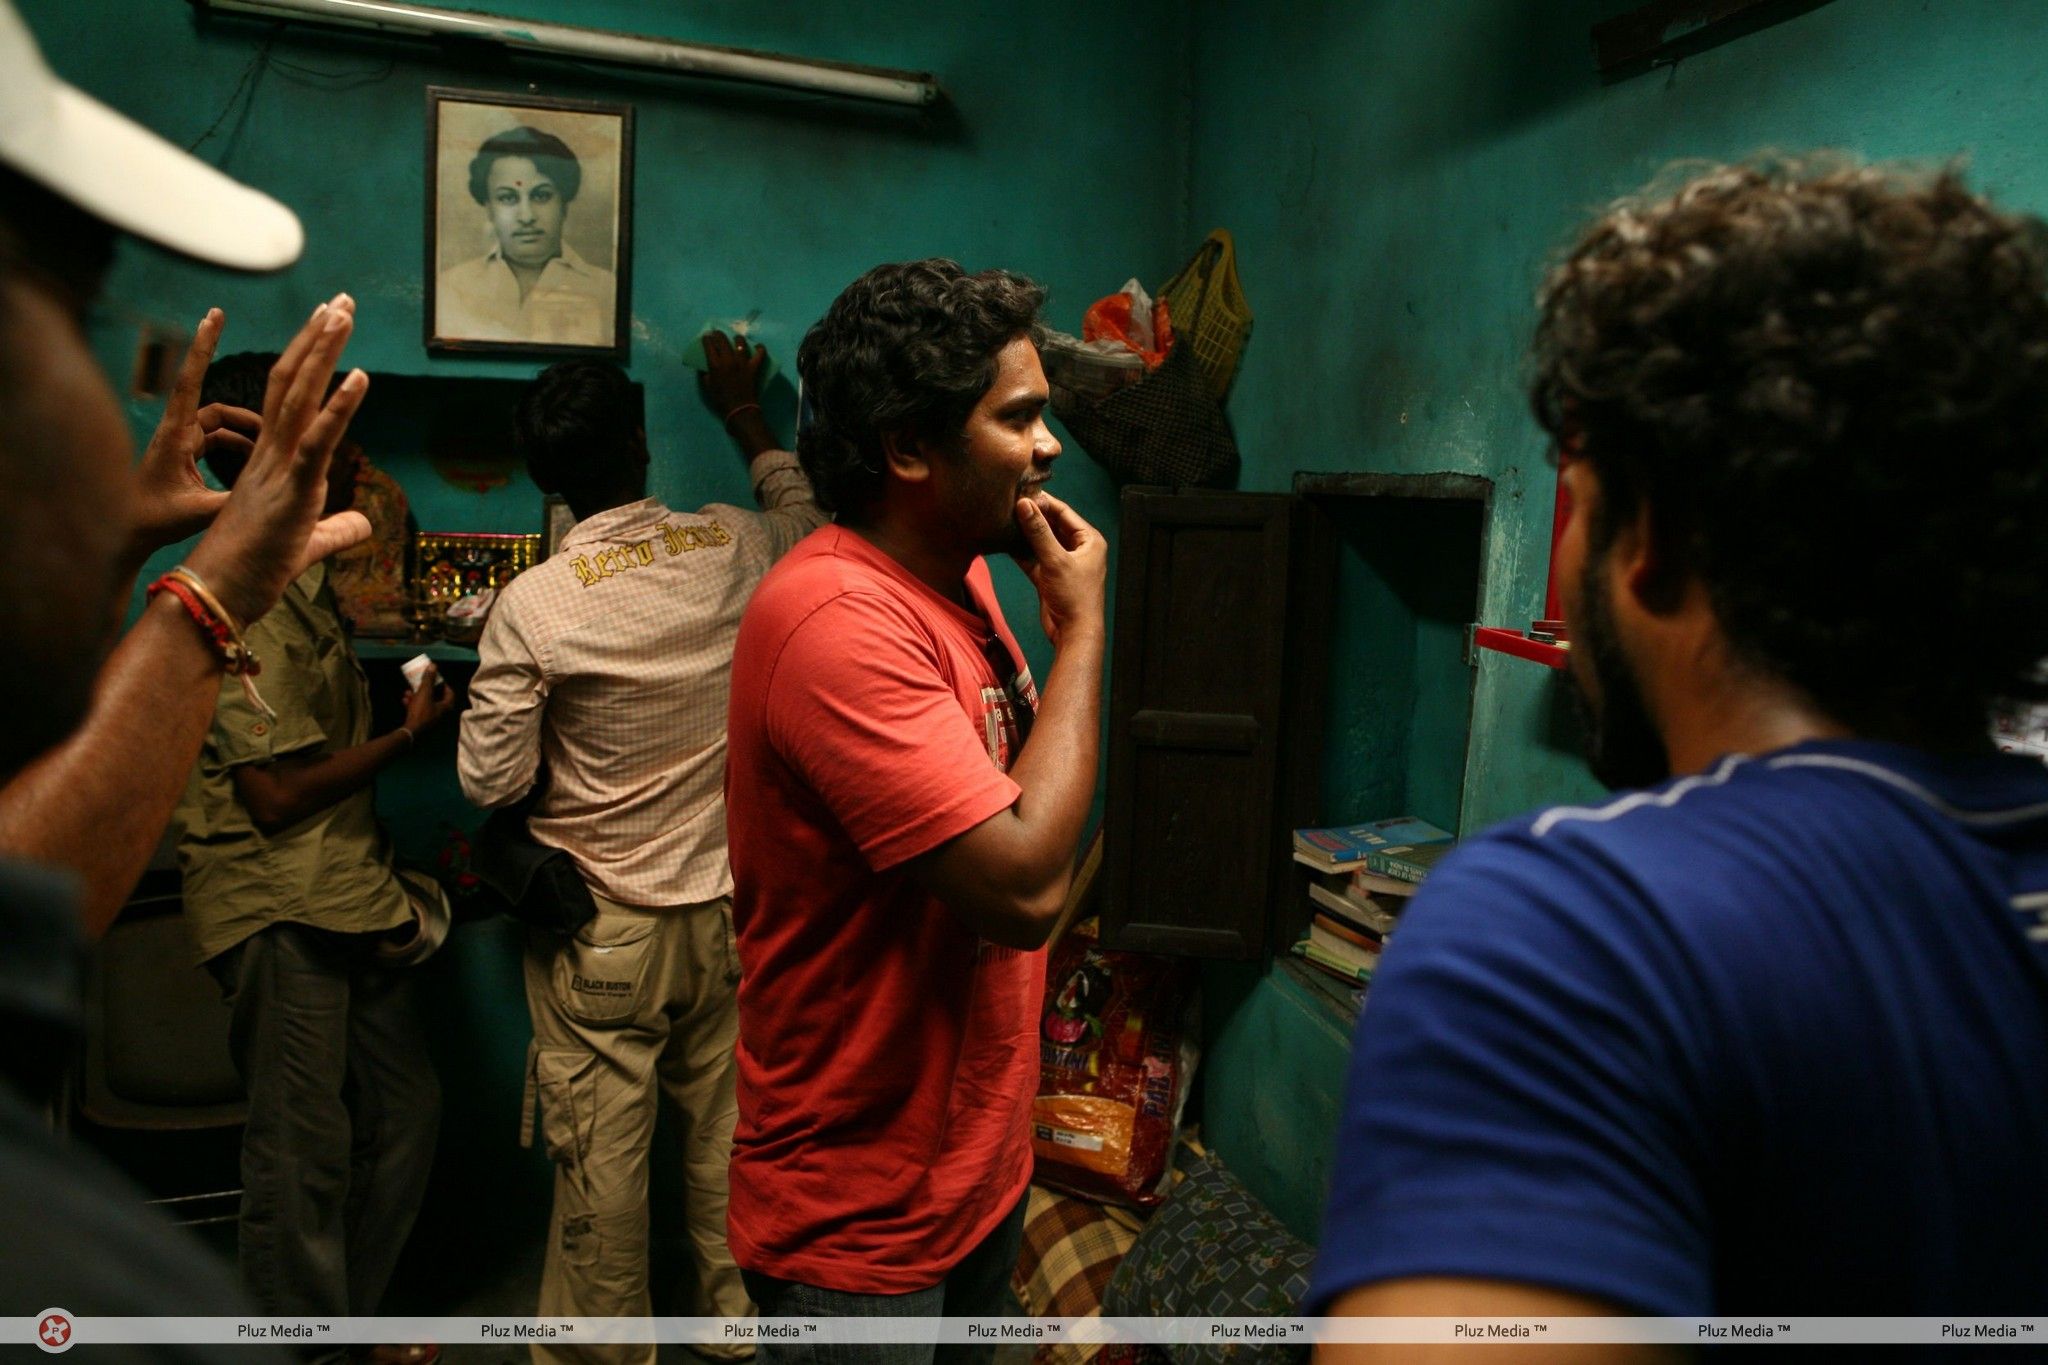 Attakathi Movie Working Stills | Picture 238480